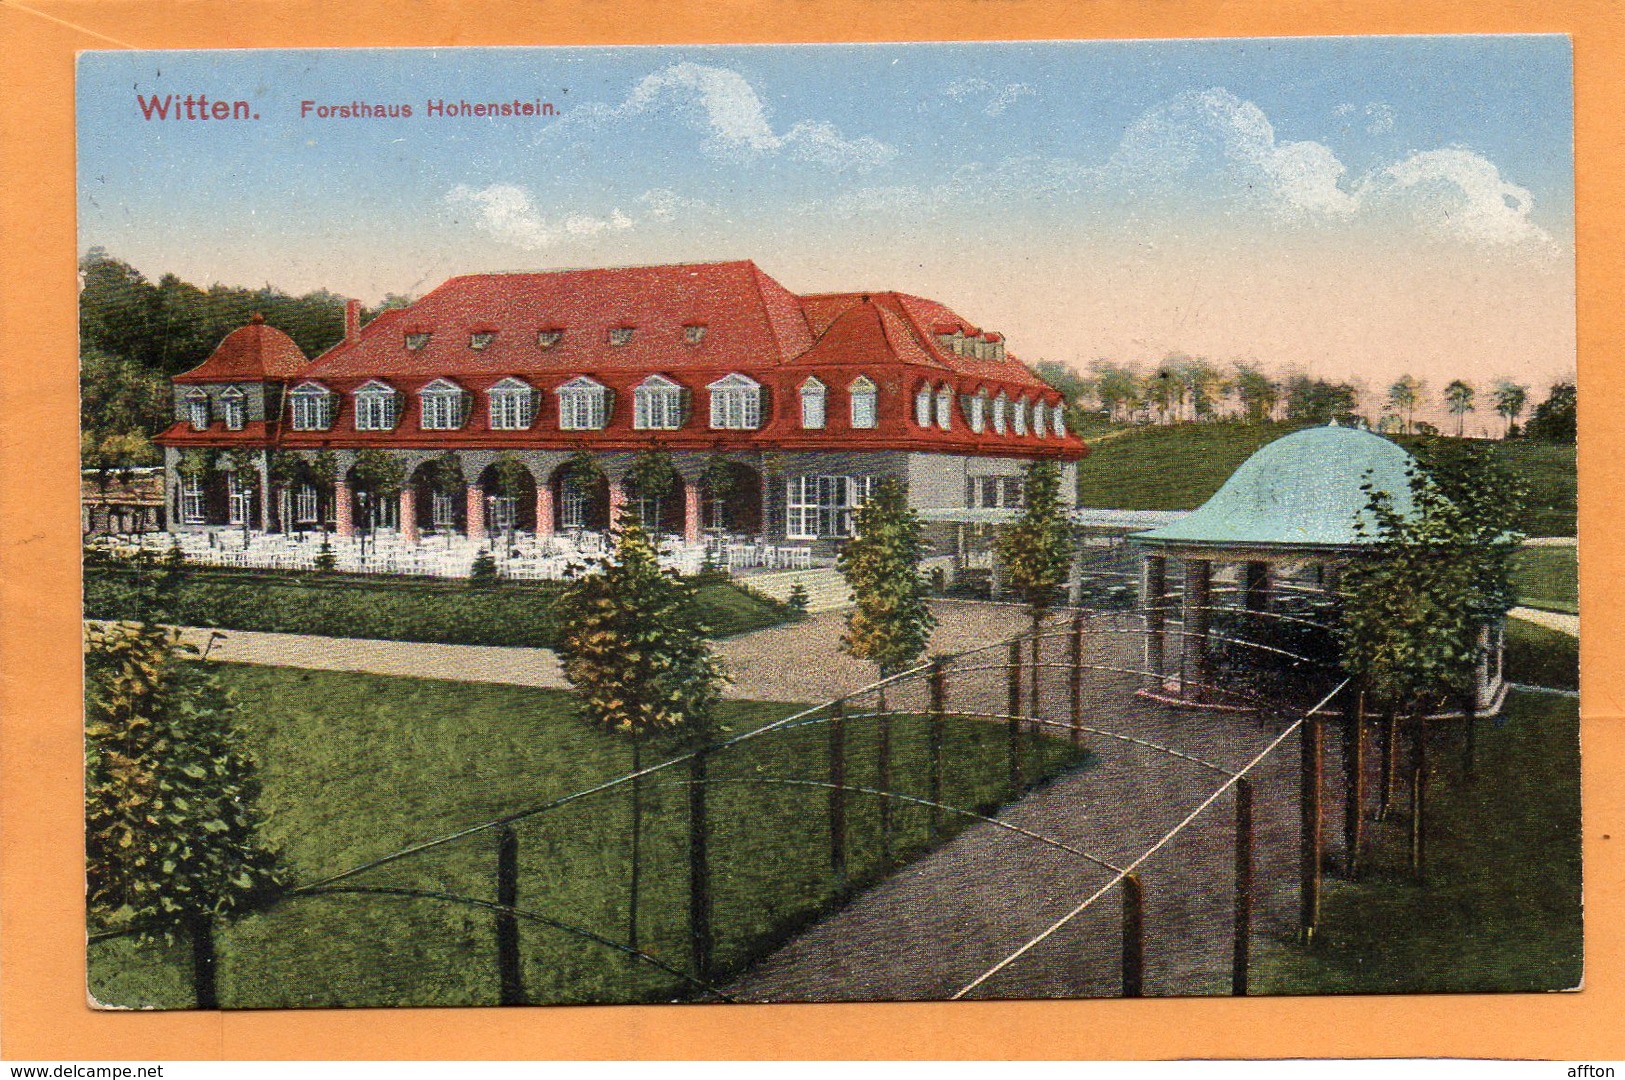 Witten Germany 1916 Postcard Mailed - Witten